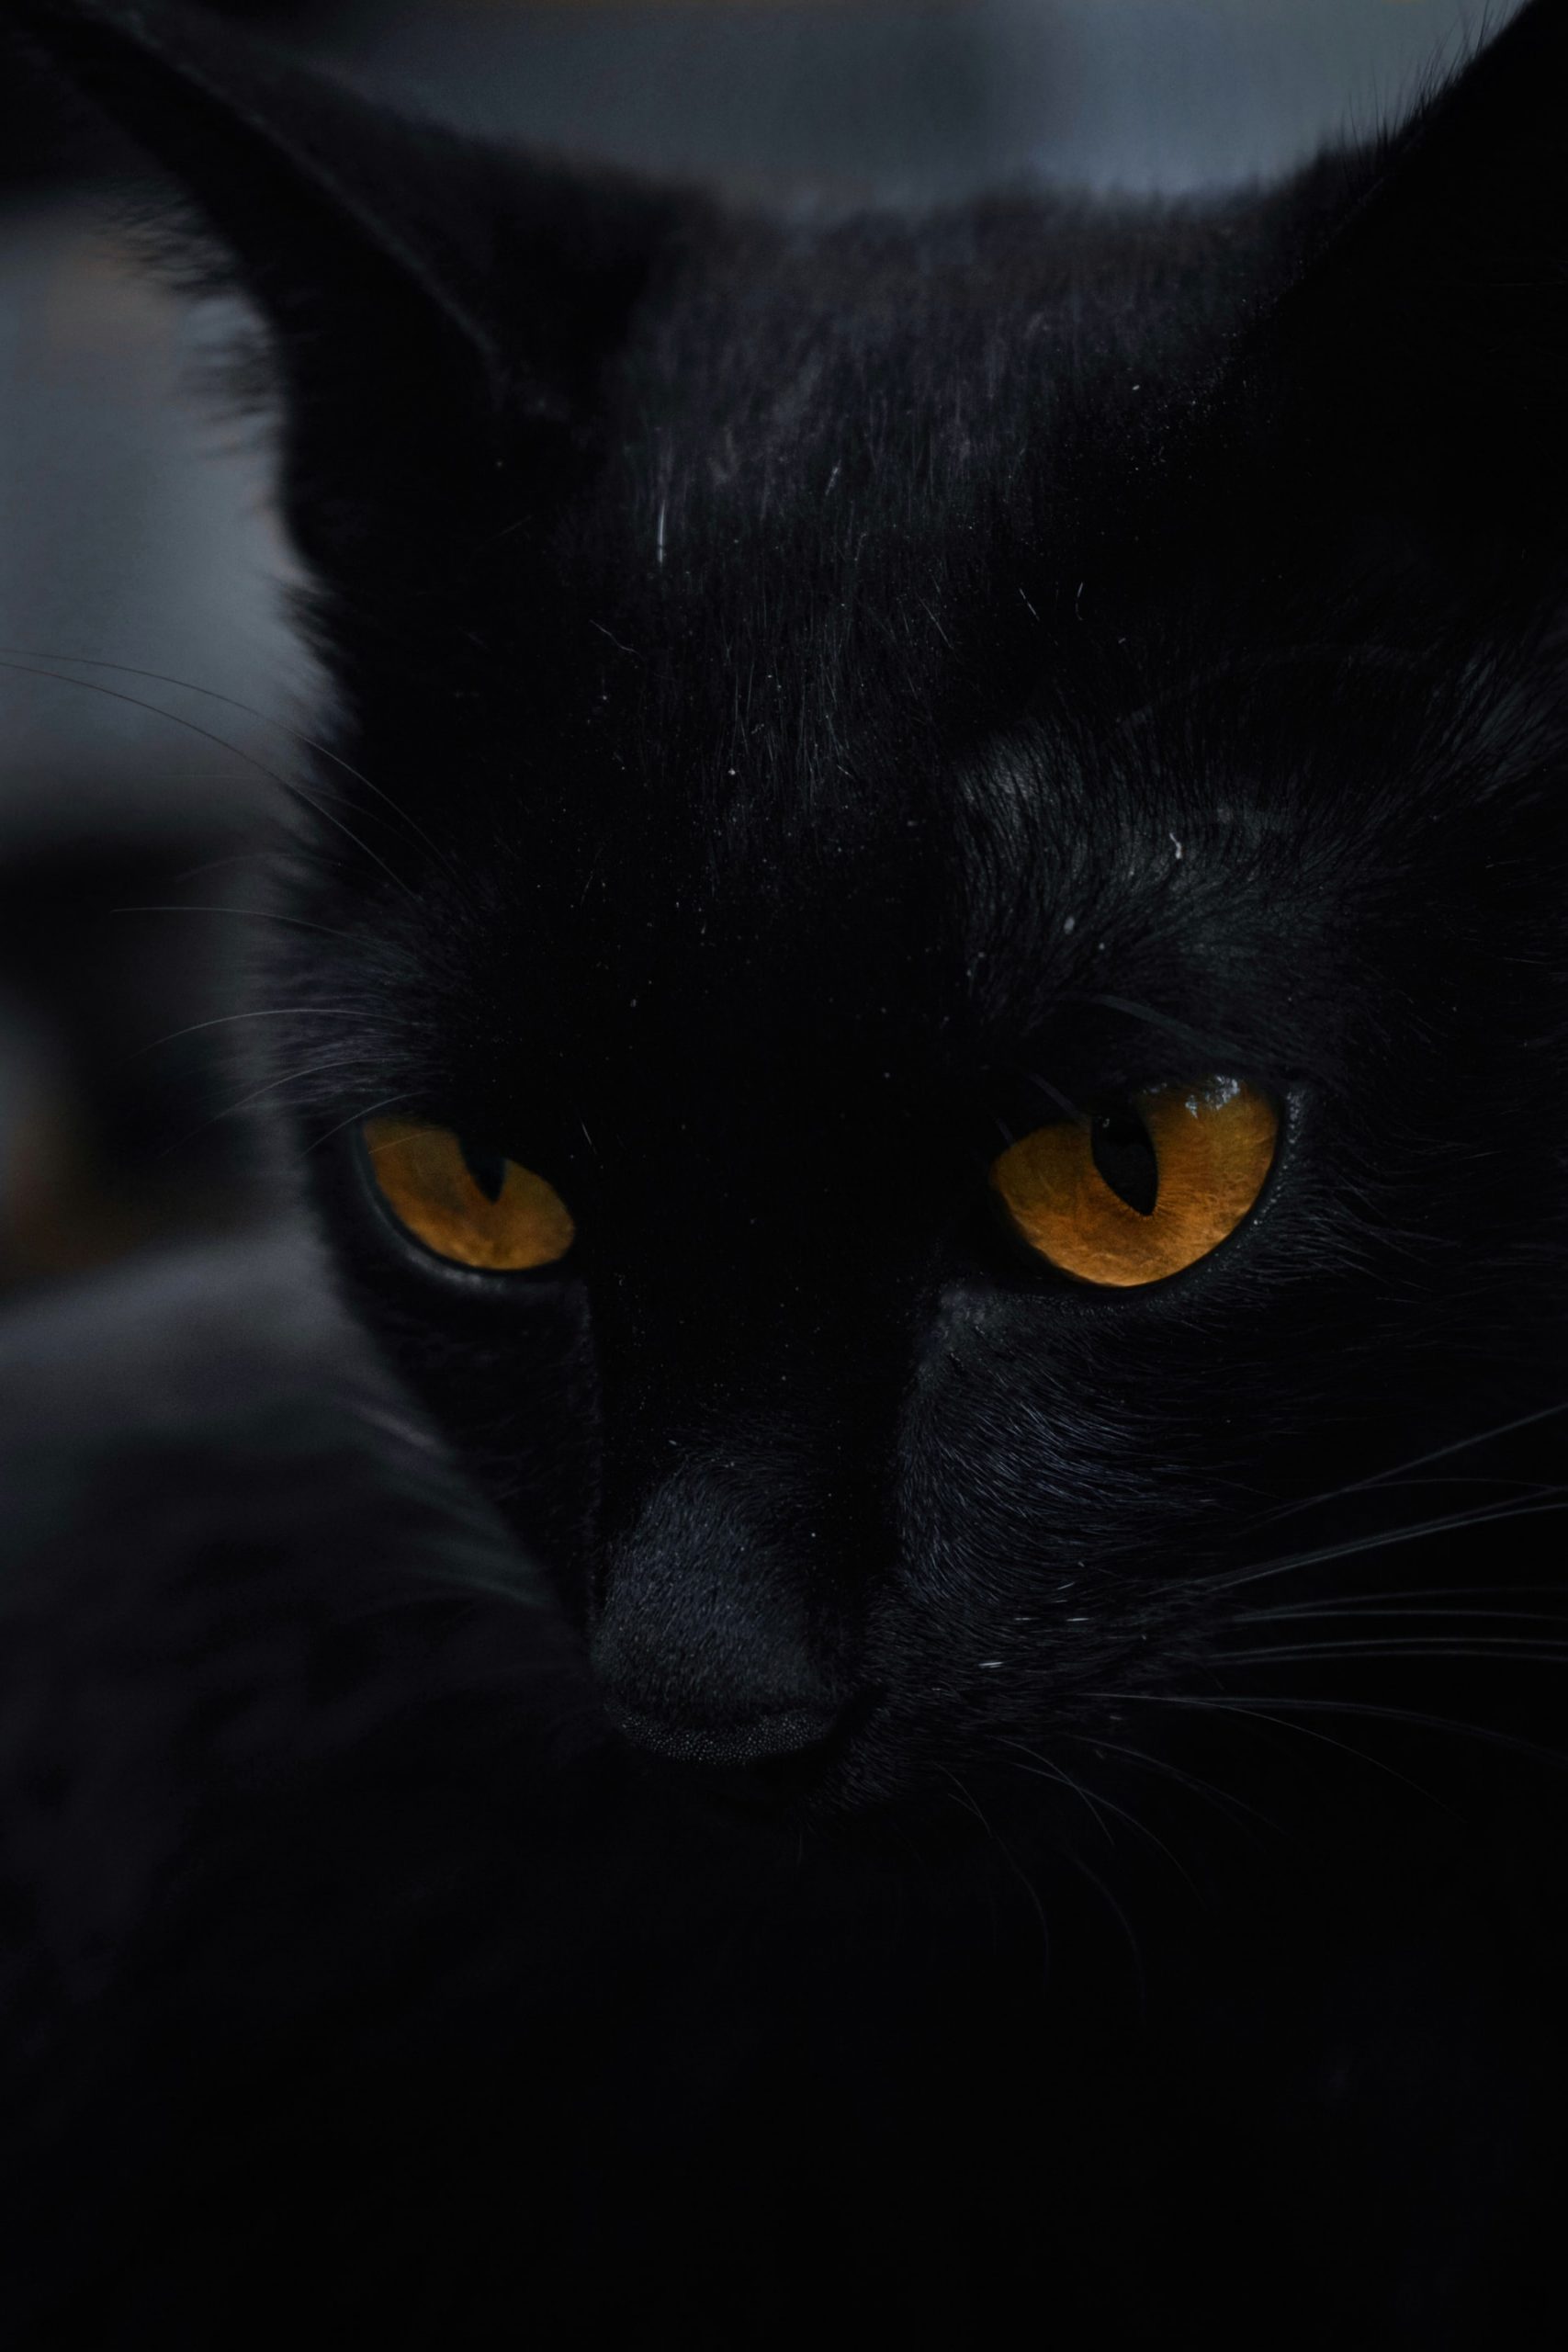 Closeup of a black cat